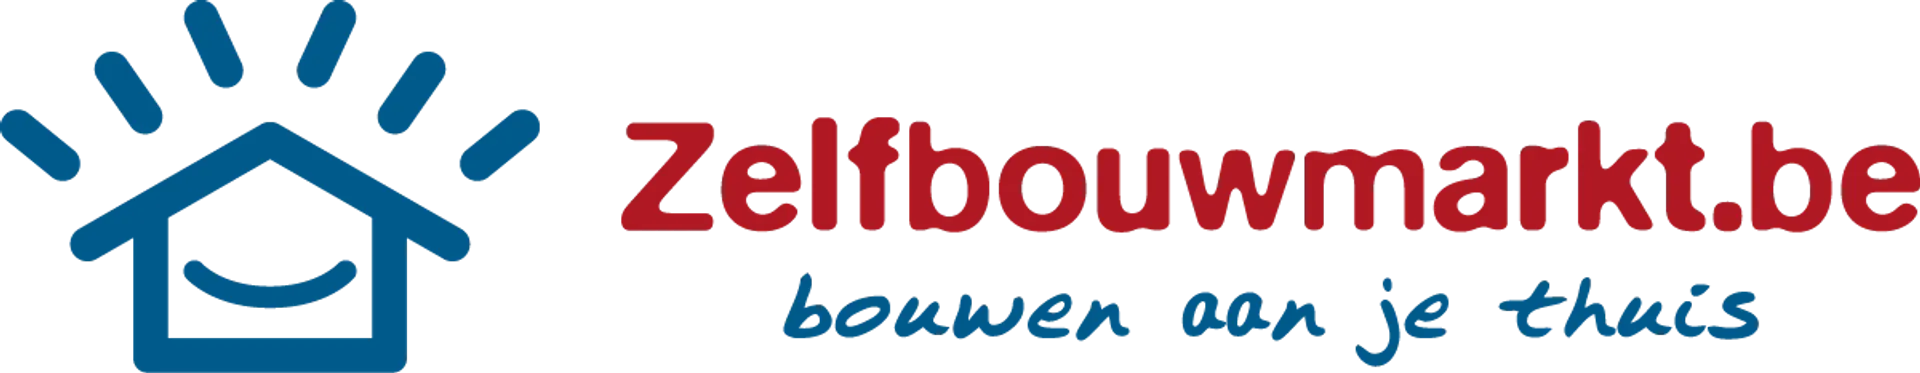 ZELFBOUWMARKT logo